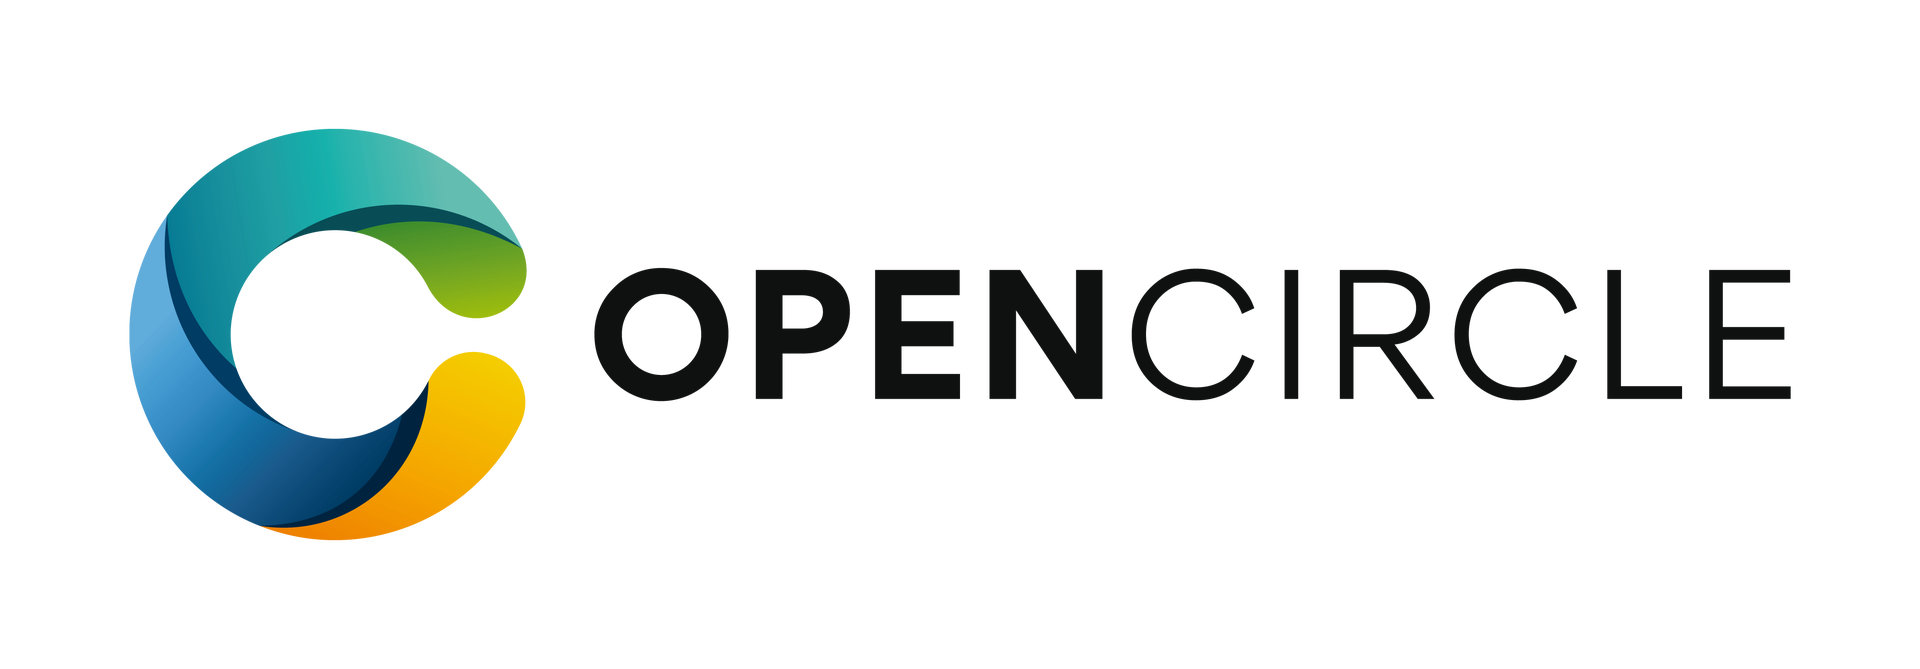 شعار الدائرة المفتوحة